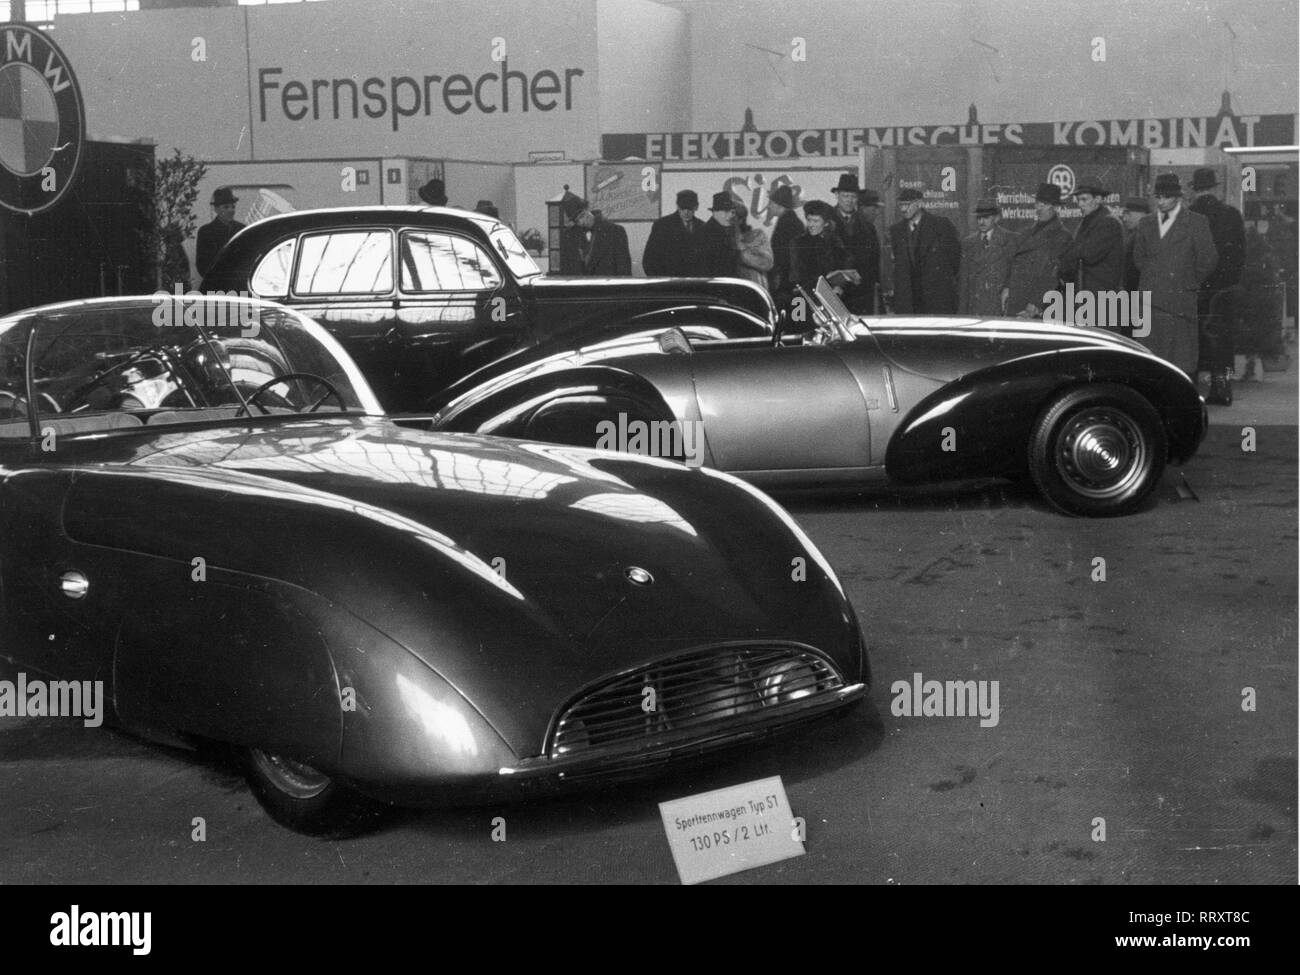 Germany - Sportwagen Typ S1, Internationale Fahrzeugausstellung (IFA) in Leipzig 1949, Deutschland Stock Photo